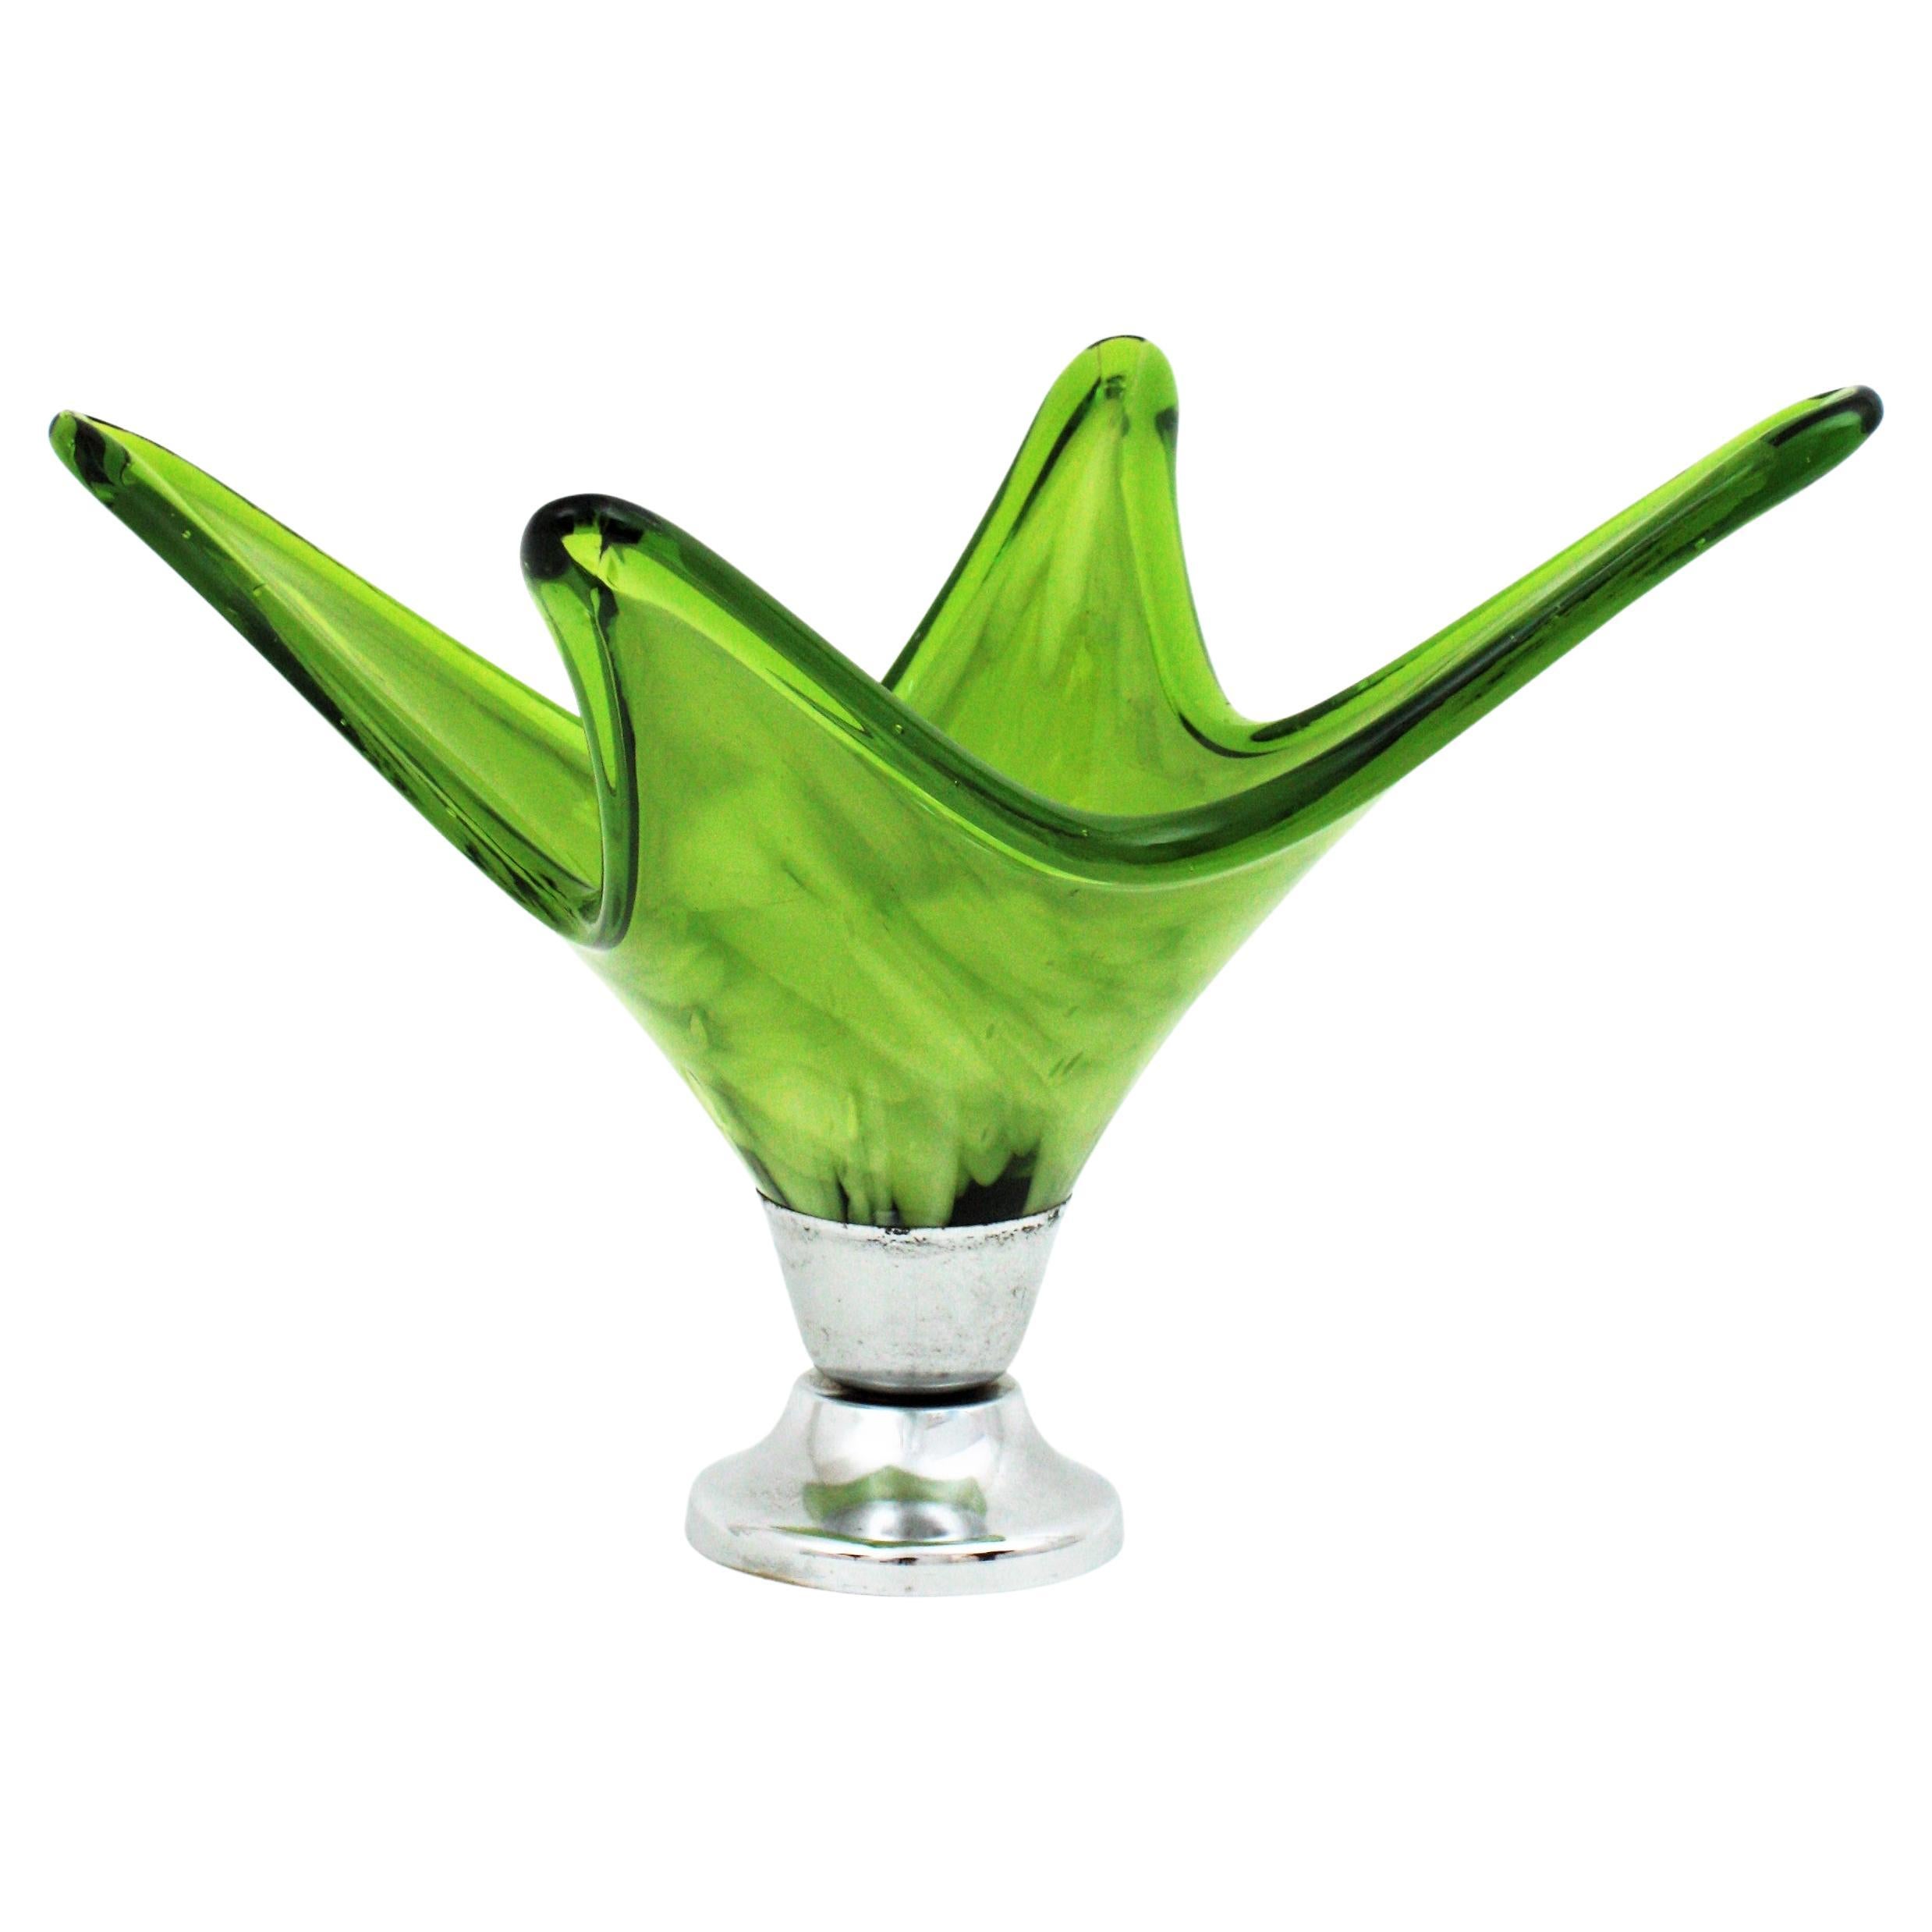 Italian Modernist Murano Green & White Glass Centerpiece Vase with Chromed Base